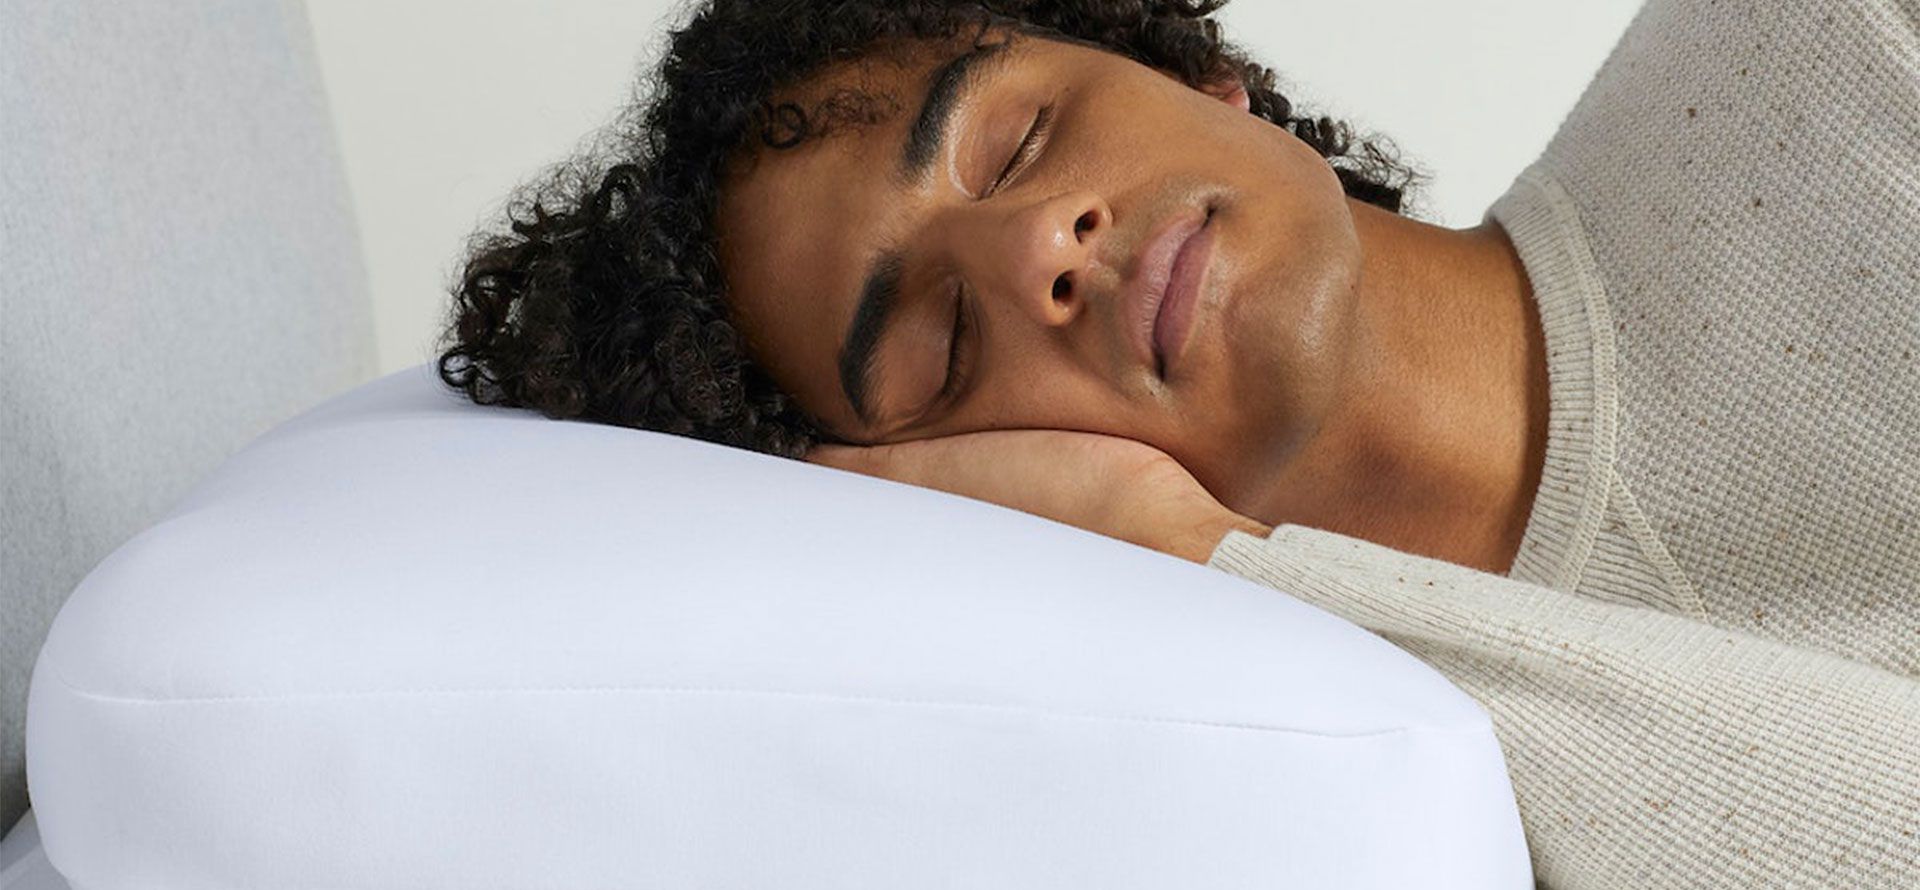 A man sleeps on a memory foam pillow.